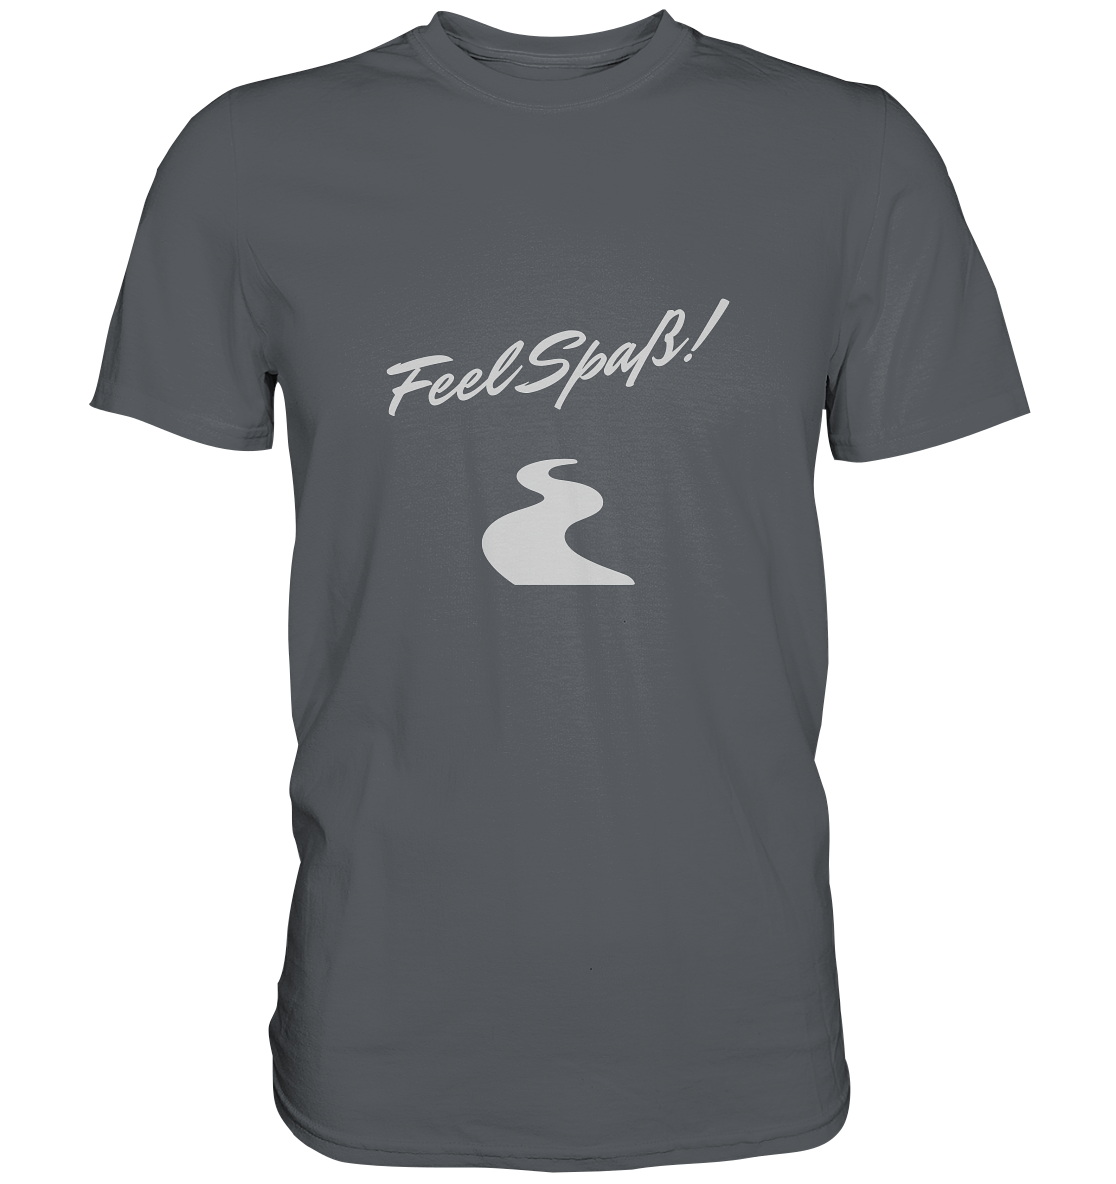 T-Shirt Herren, Rundhals, mit Aufdruck "Feel Spaß!" und kurviger Straße, grau